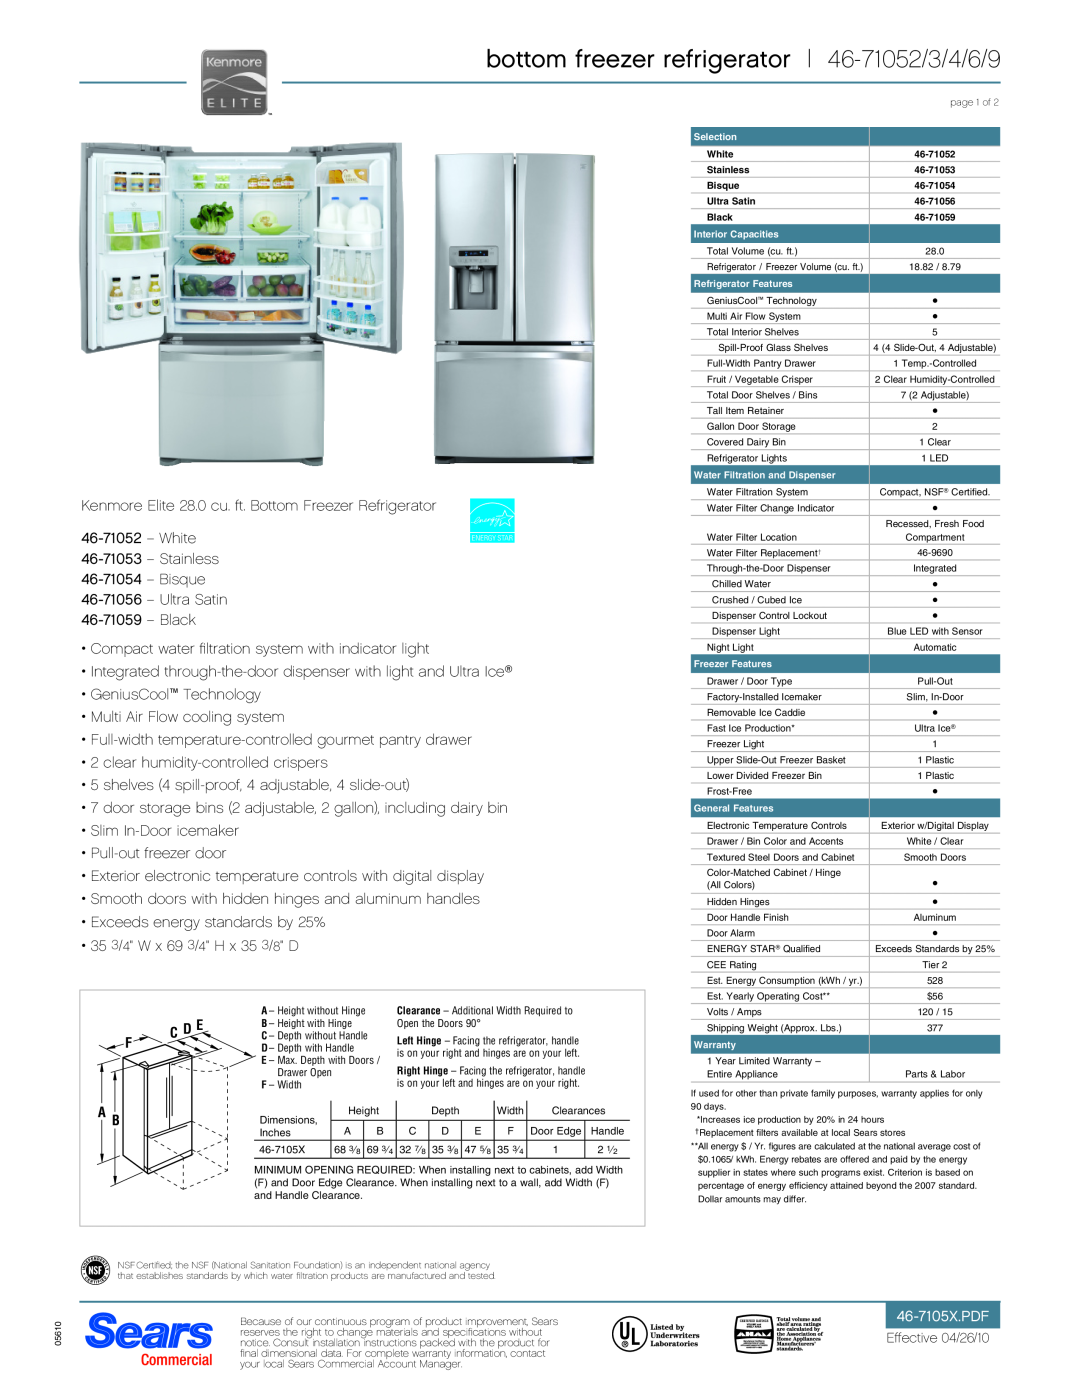 Sears 46-71059, 46-71053, 46-71054, 46-71056 dimensions bottom freezer refrigerator 46-71052/3/4/6/9, C D E 